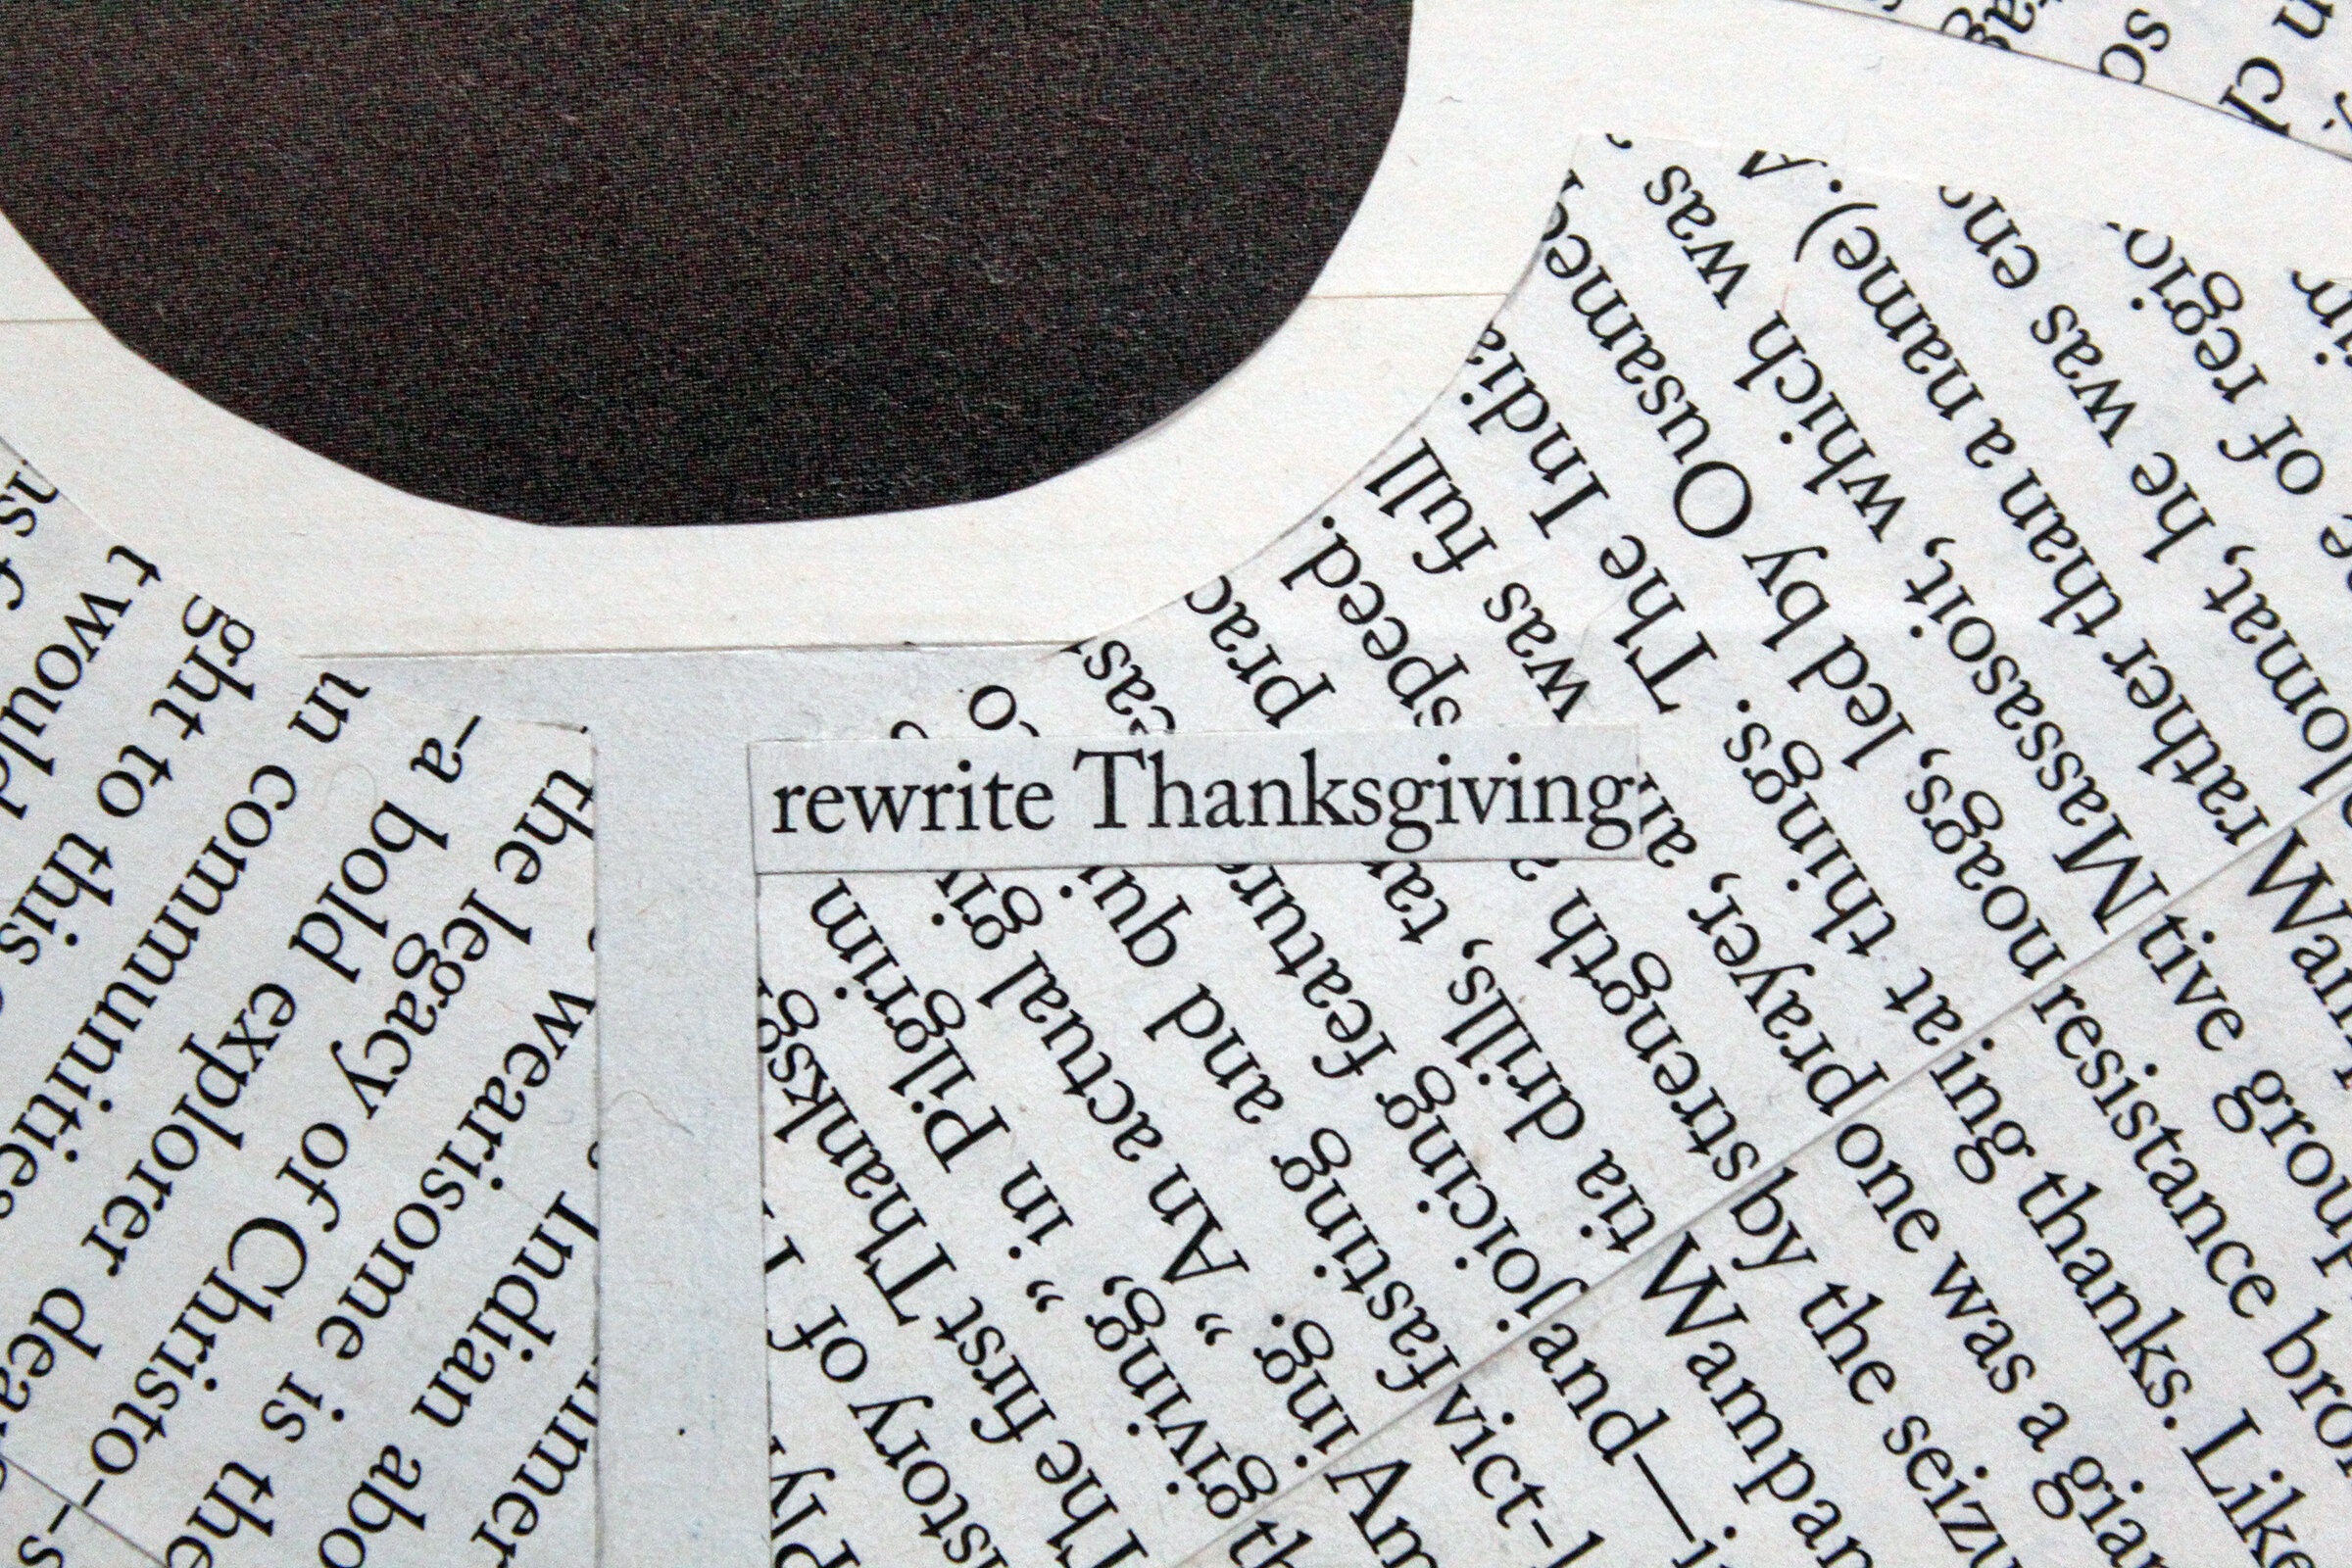  Detail – “rewrite Thanksgiving” 